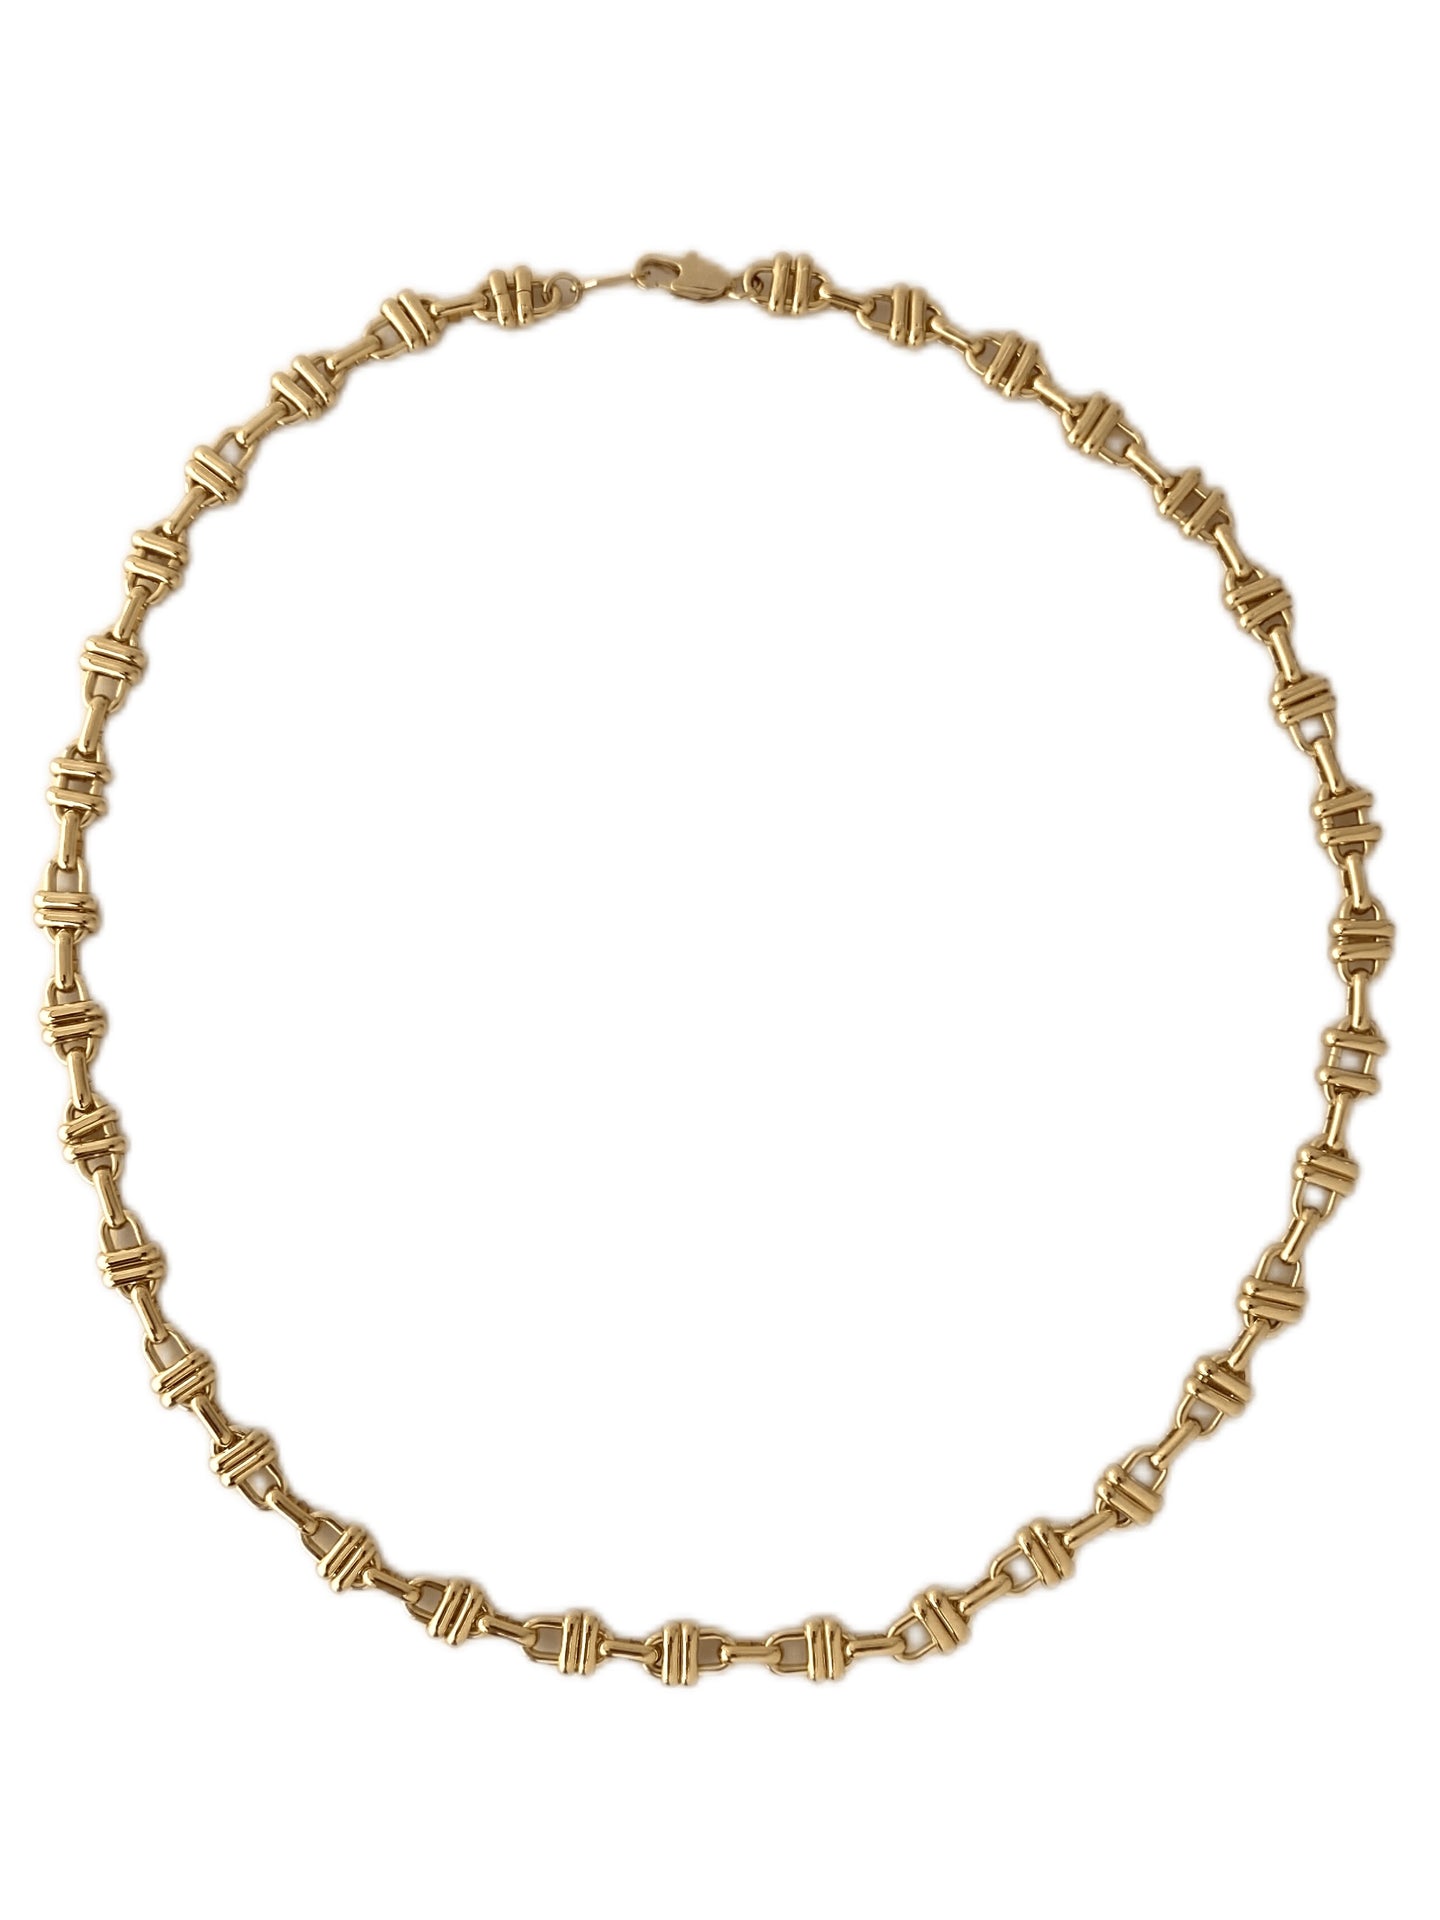 The Small Shavano Chain Necklace